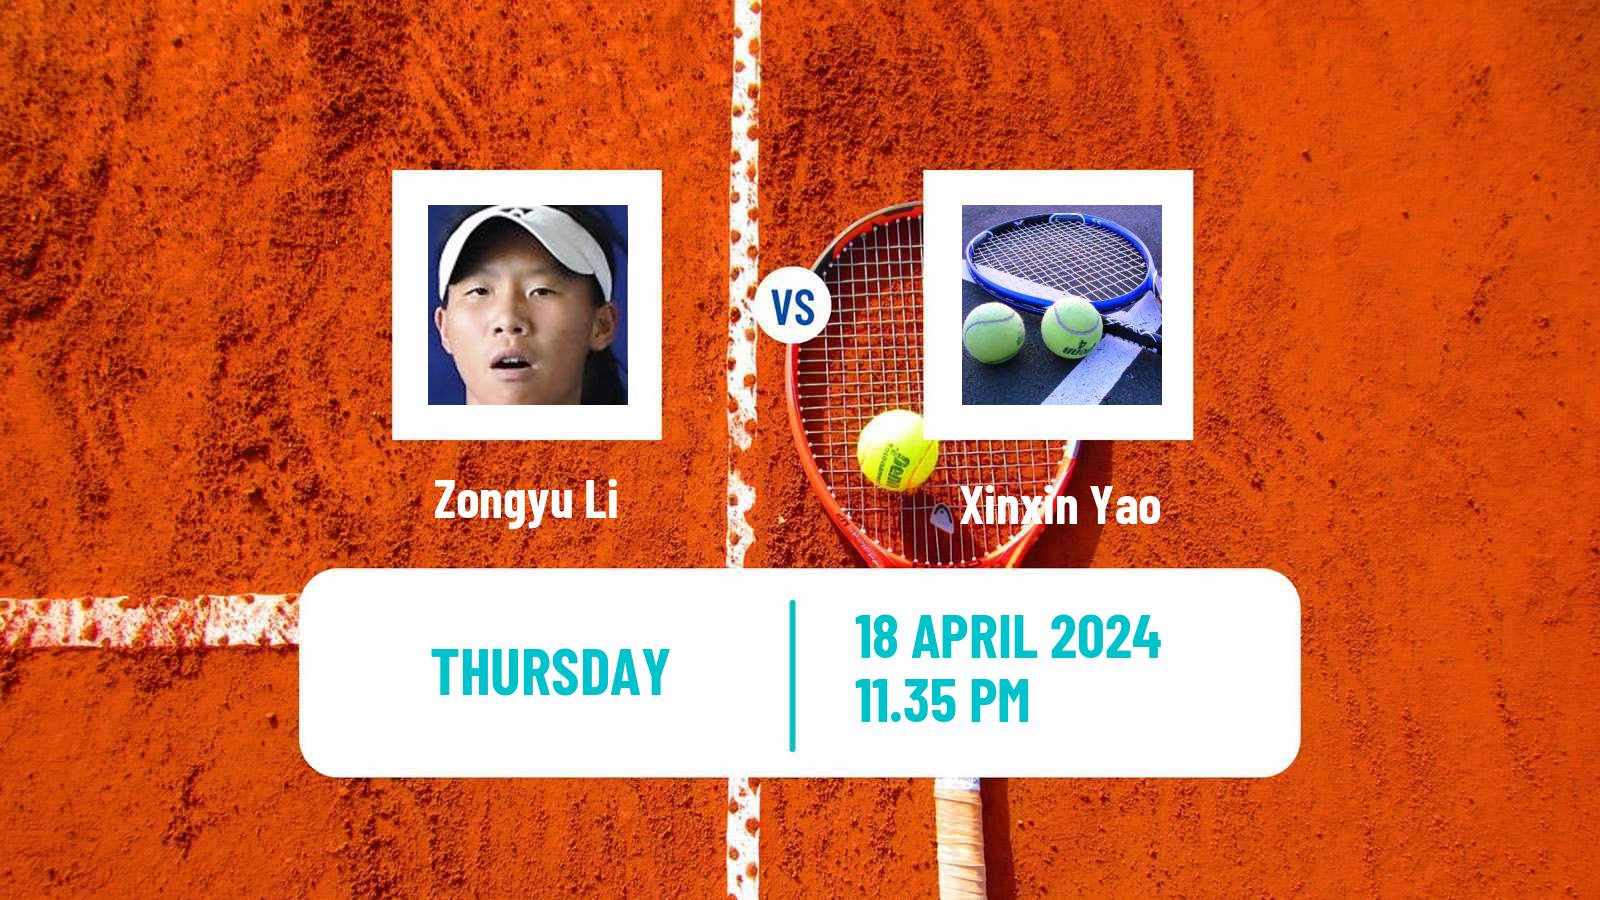 Tennis ITF W50 Shenzhen 2 Women Zongyu Li - Xinxin Yao